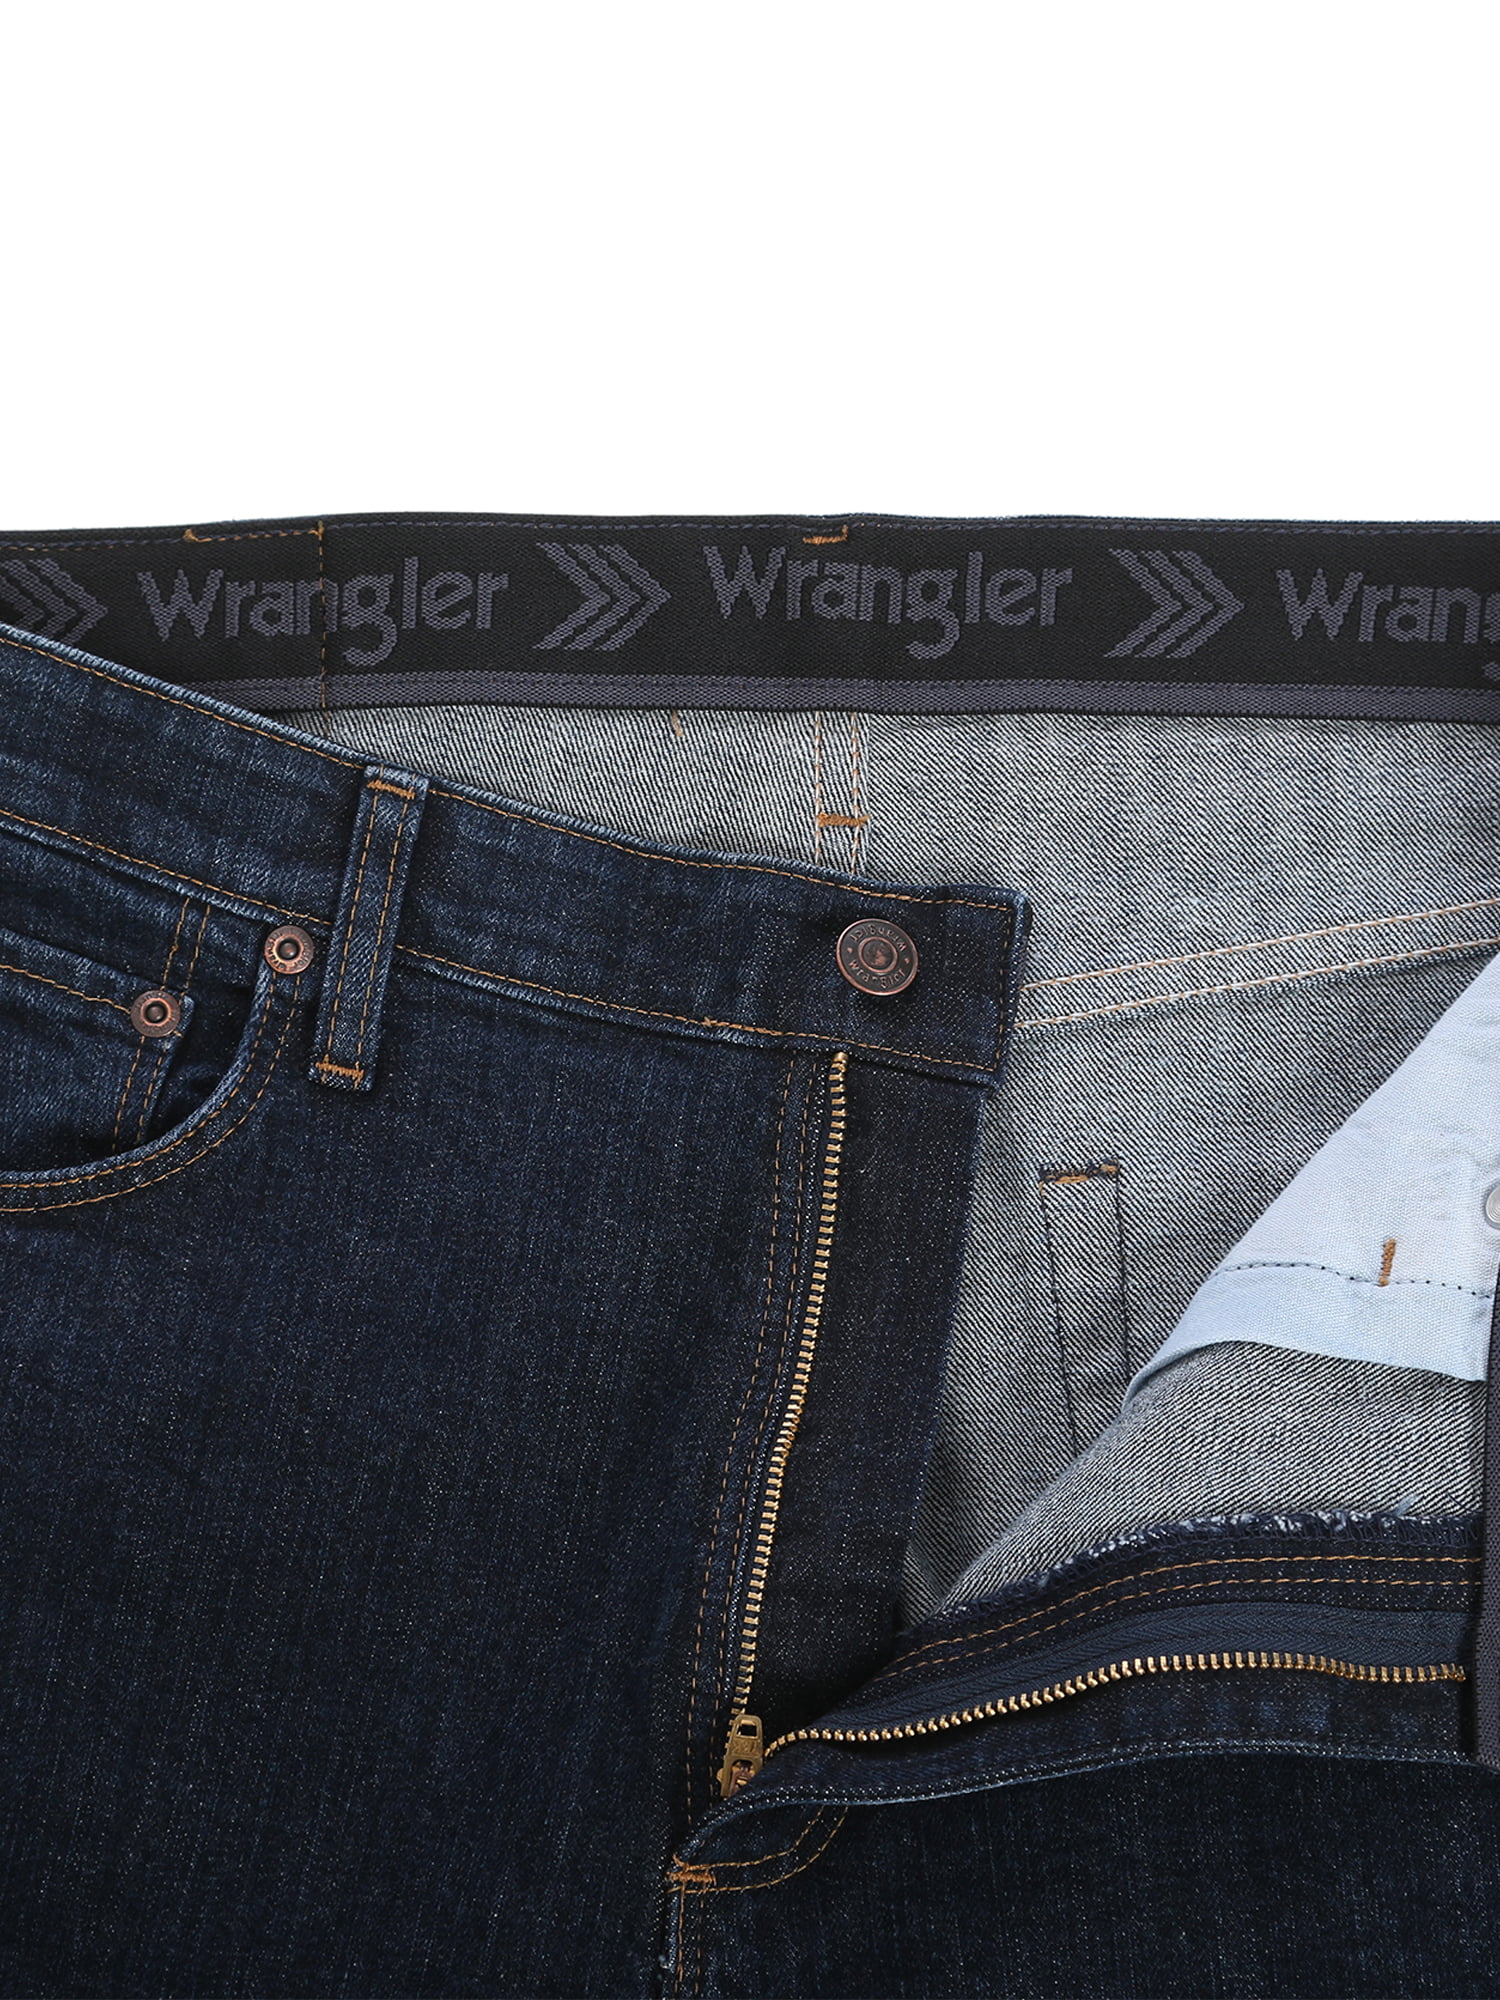 Wrangler Big Men's Performance Series Regular Fit Jean 